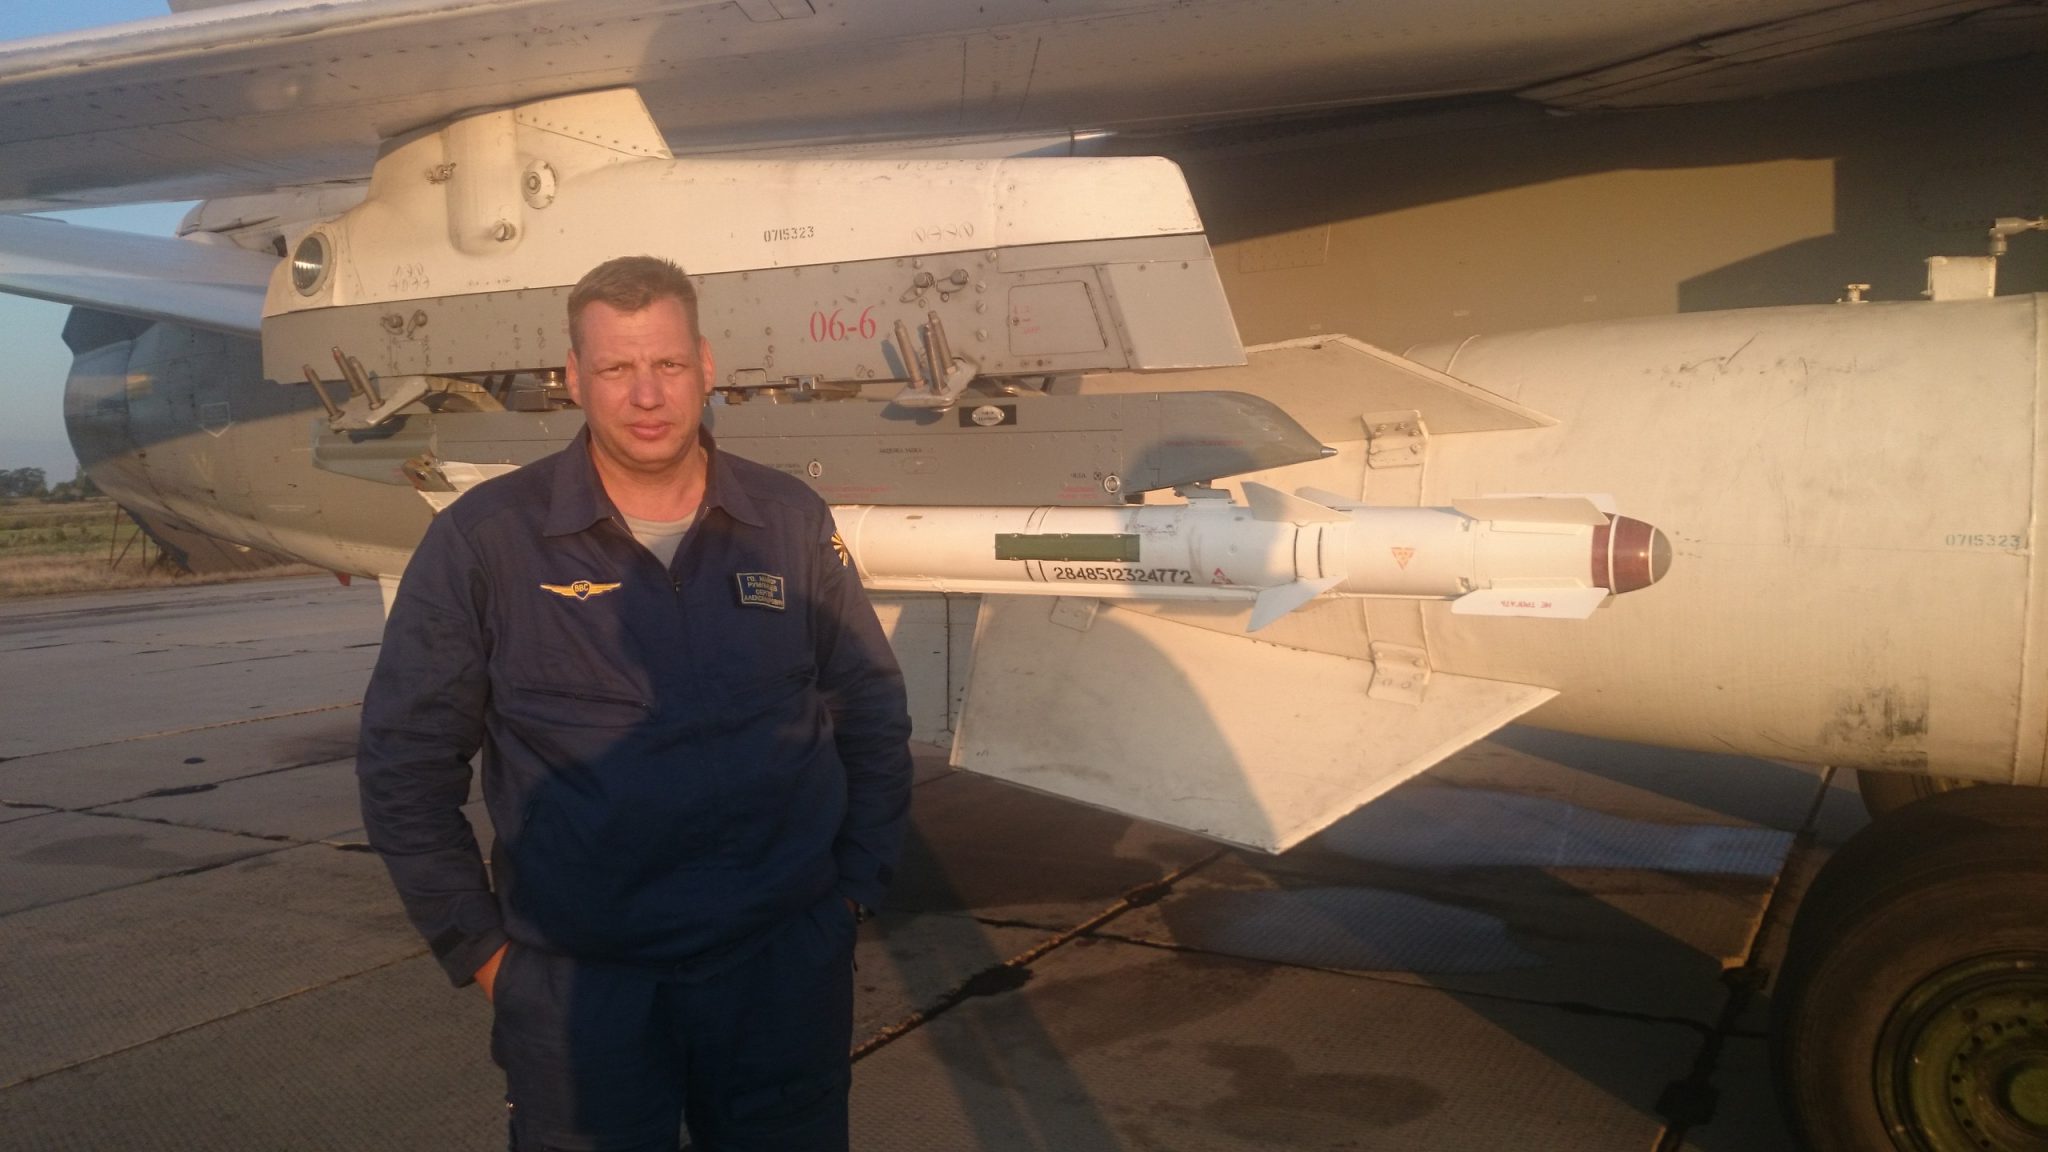   «جبهة النصرة» الإرهابية تنشر فيديو لجثة الطيار الروسي إثر إسقاط طائرته